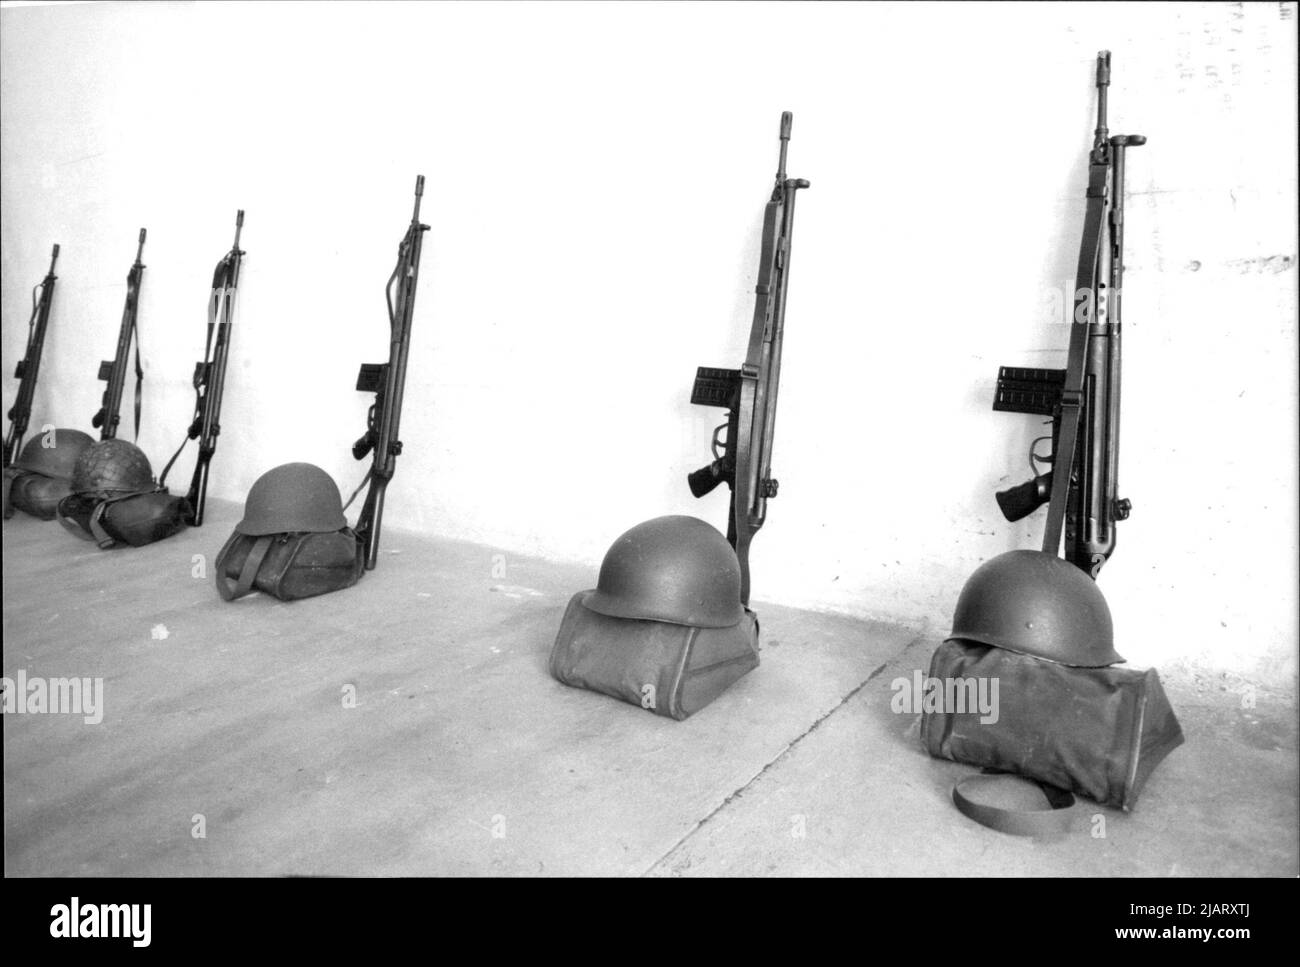 Gefechtshelme, Taschen und Gewehre der Bundeswehr ordentlich aufgereiht. Foto de stock